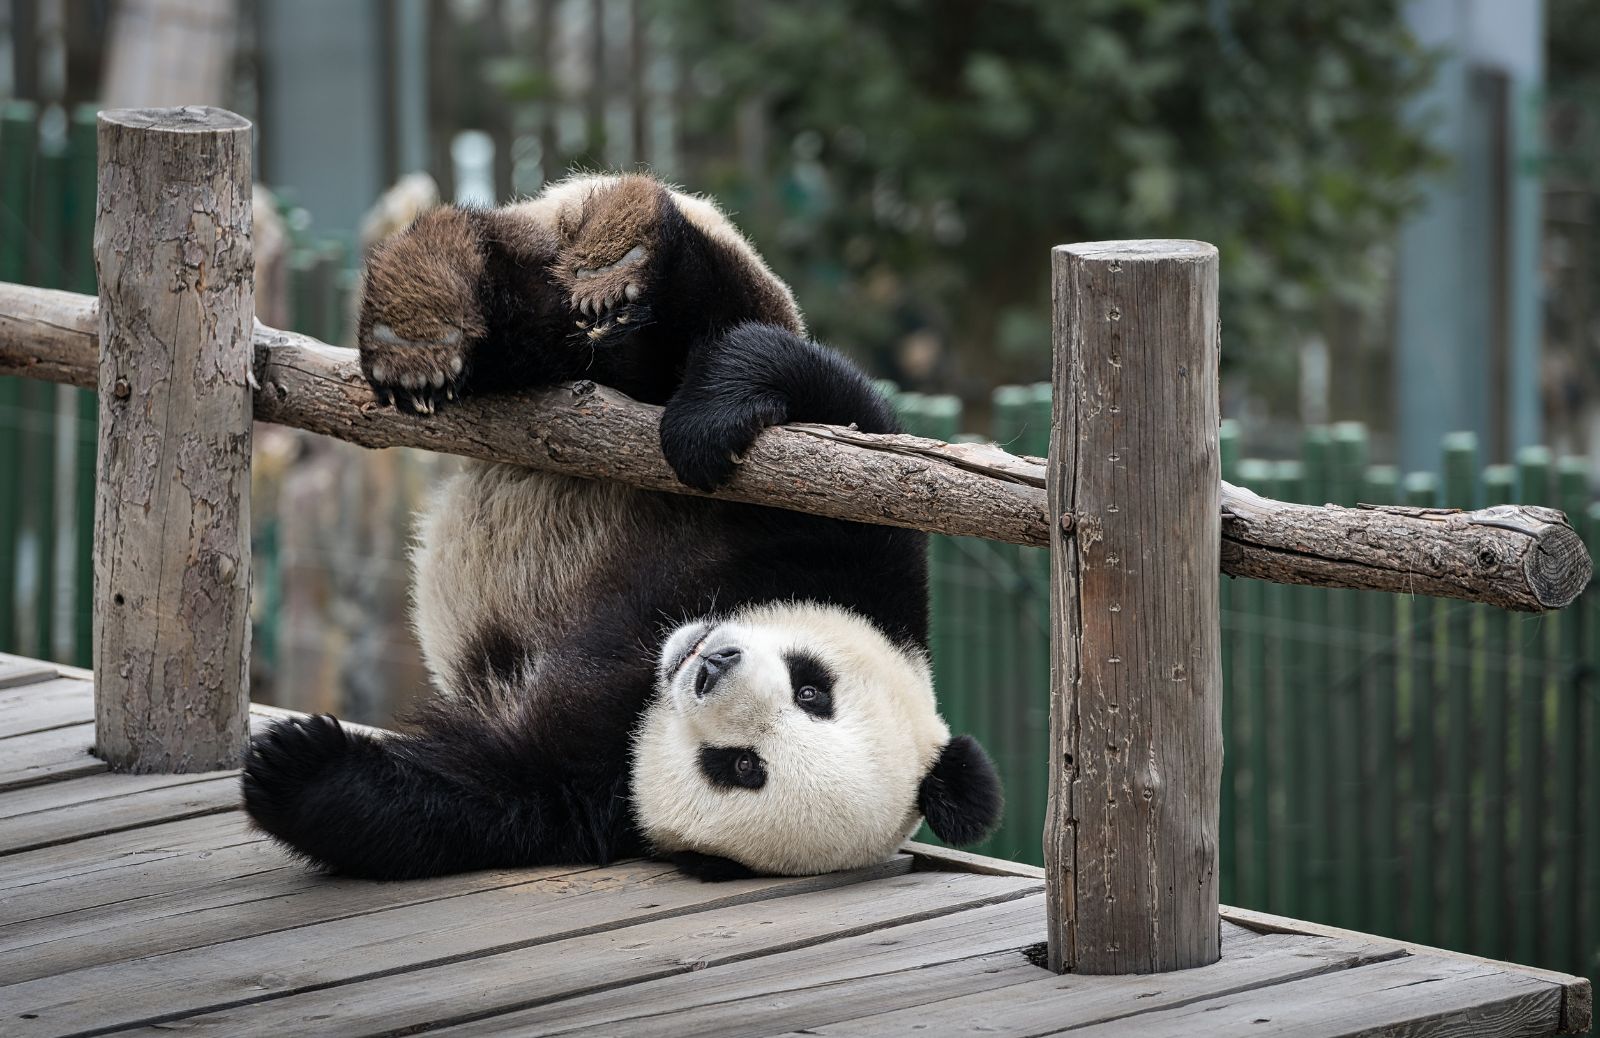 Perché il panda non è più a rischio estinzione